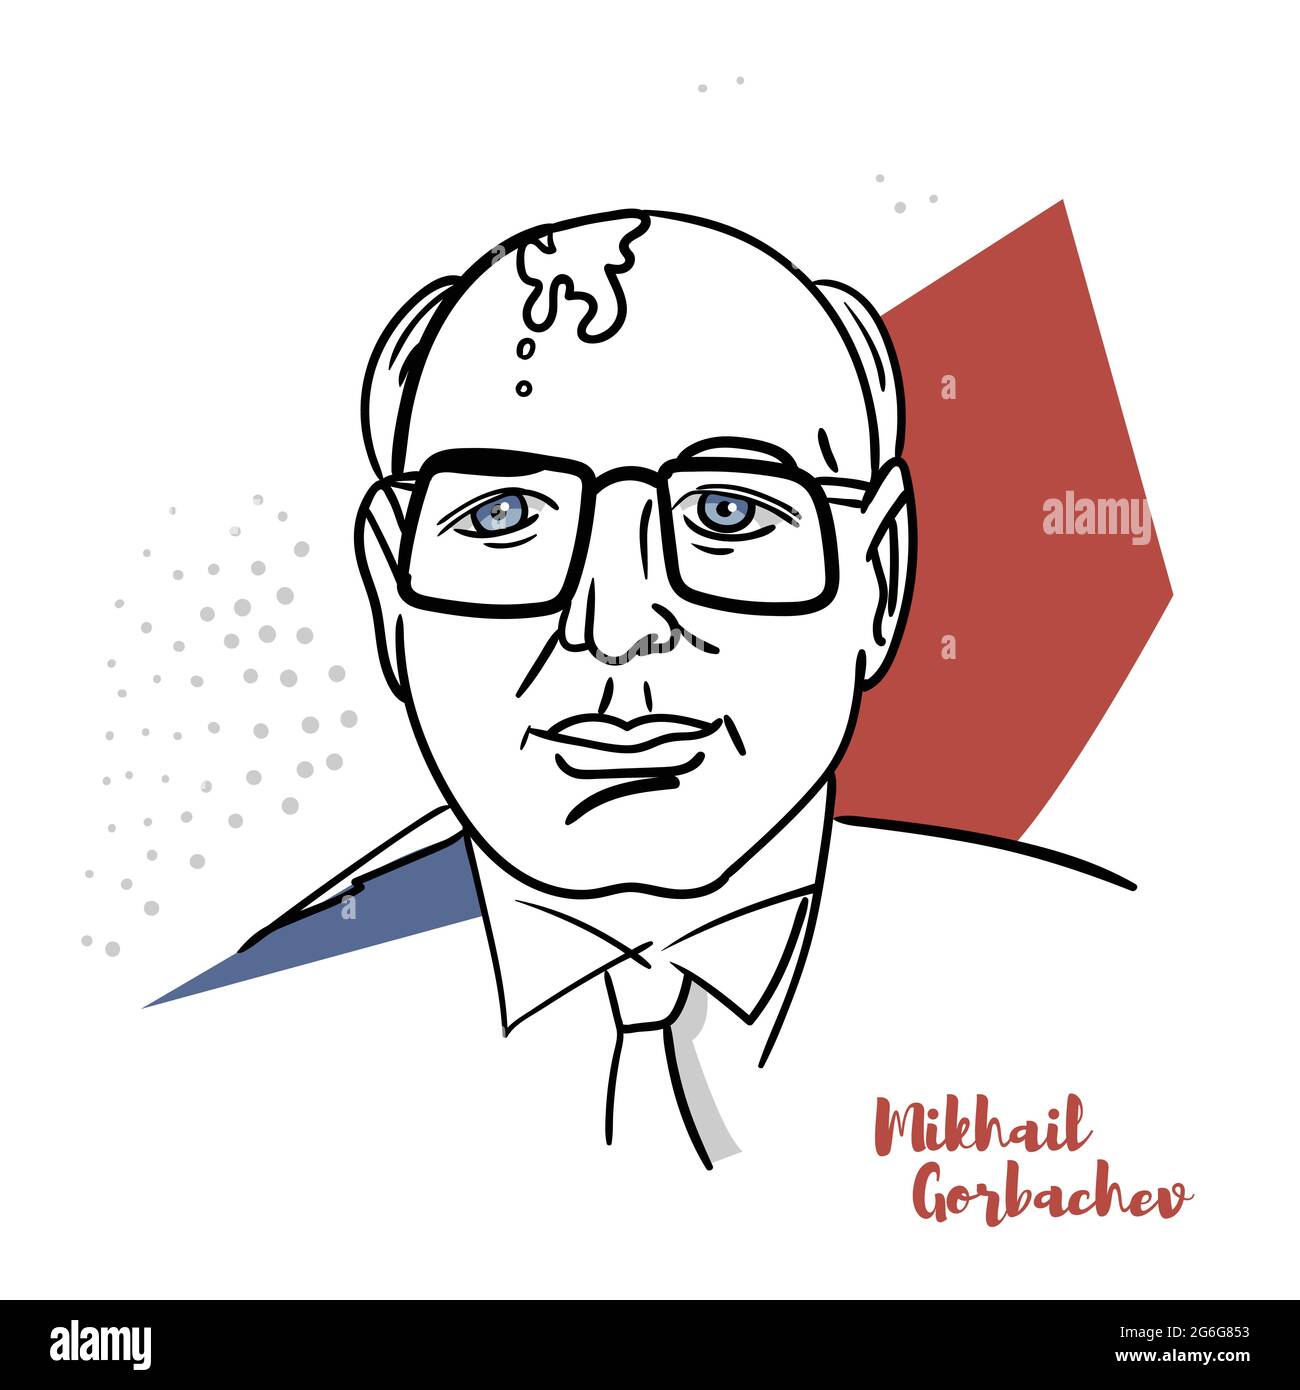 CINA, CHENGHAI - 1 MARZO 2019: Mikhail Gorbachev ritratto vettoriale piatto con contorni neri. L'ottavo e ultimo leader dell'Unione Sovietica. Illustrazione Vettoriale